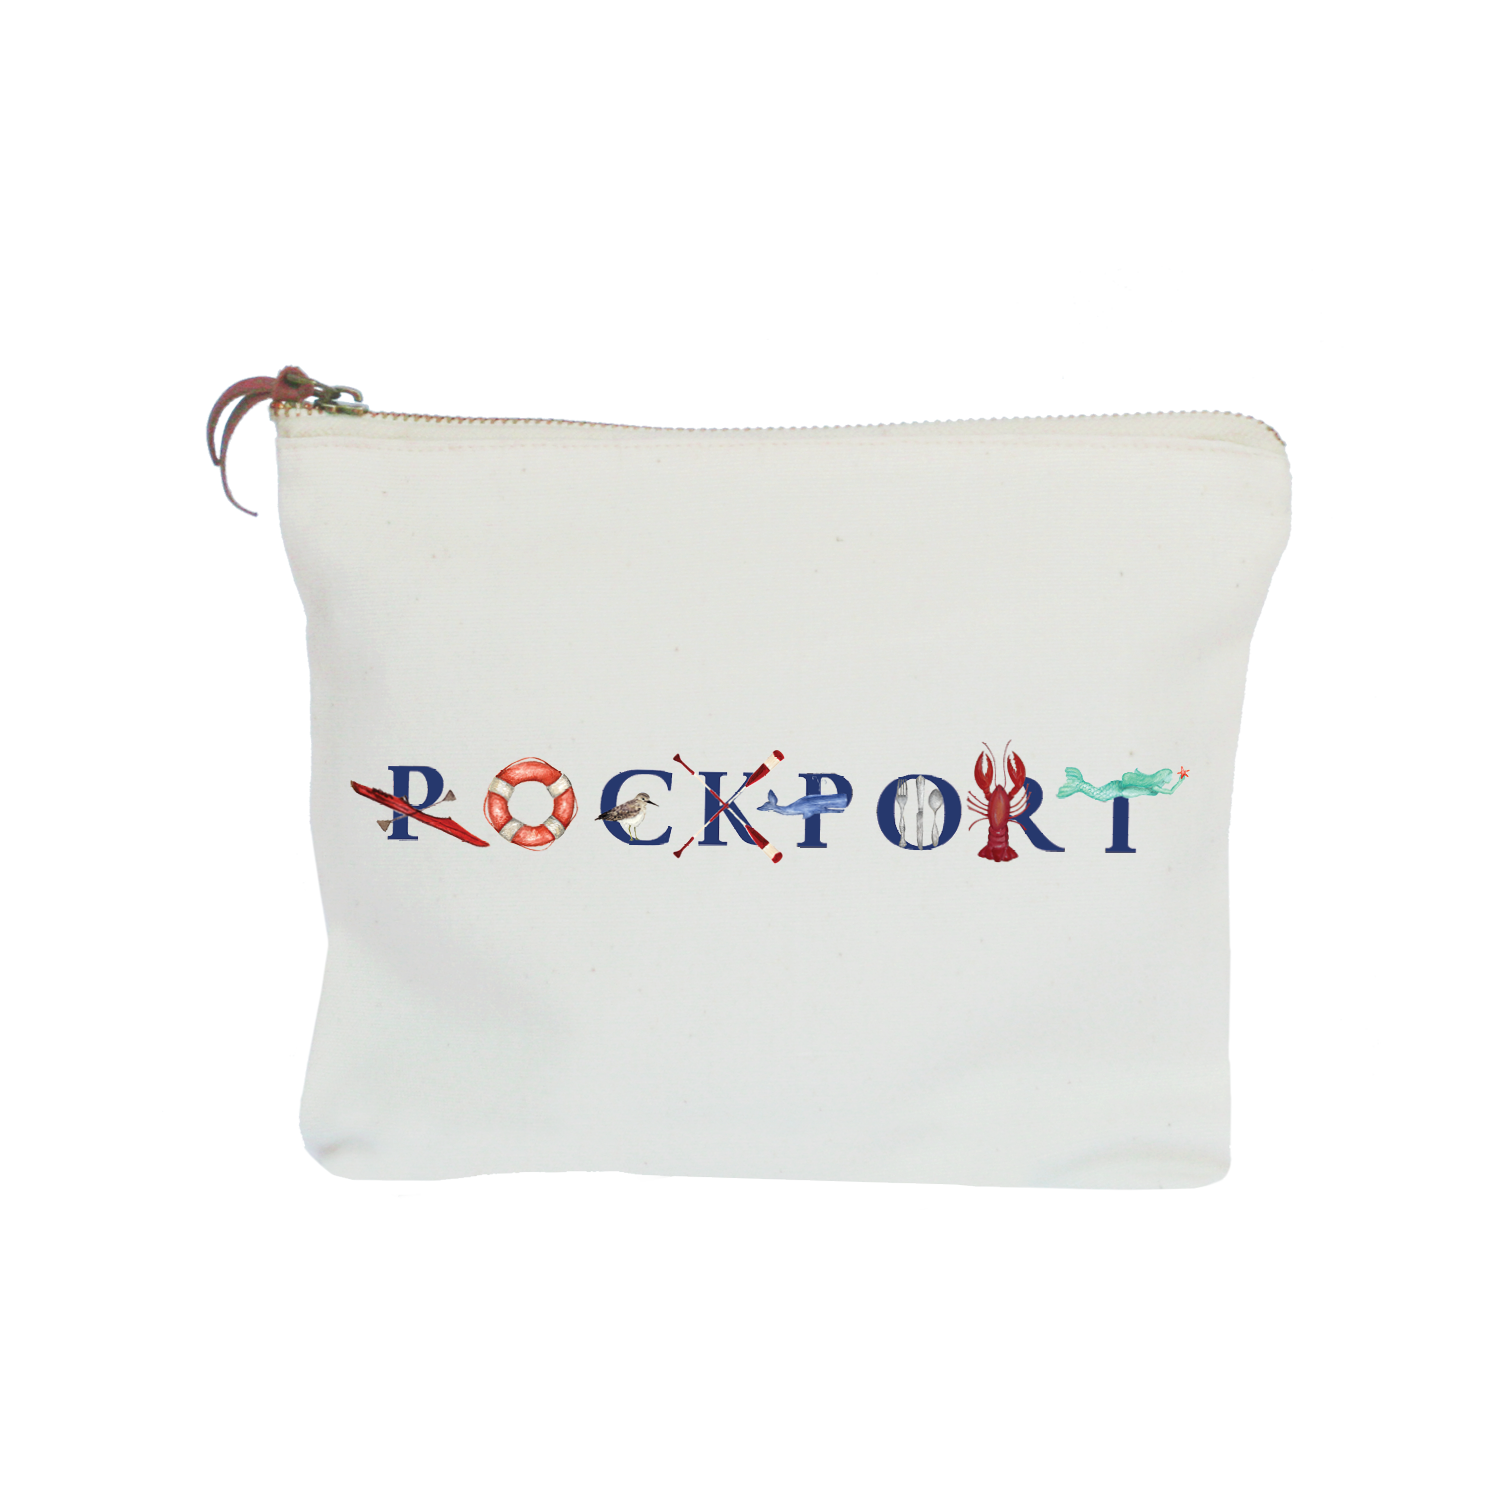 Rockport zipper pouch